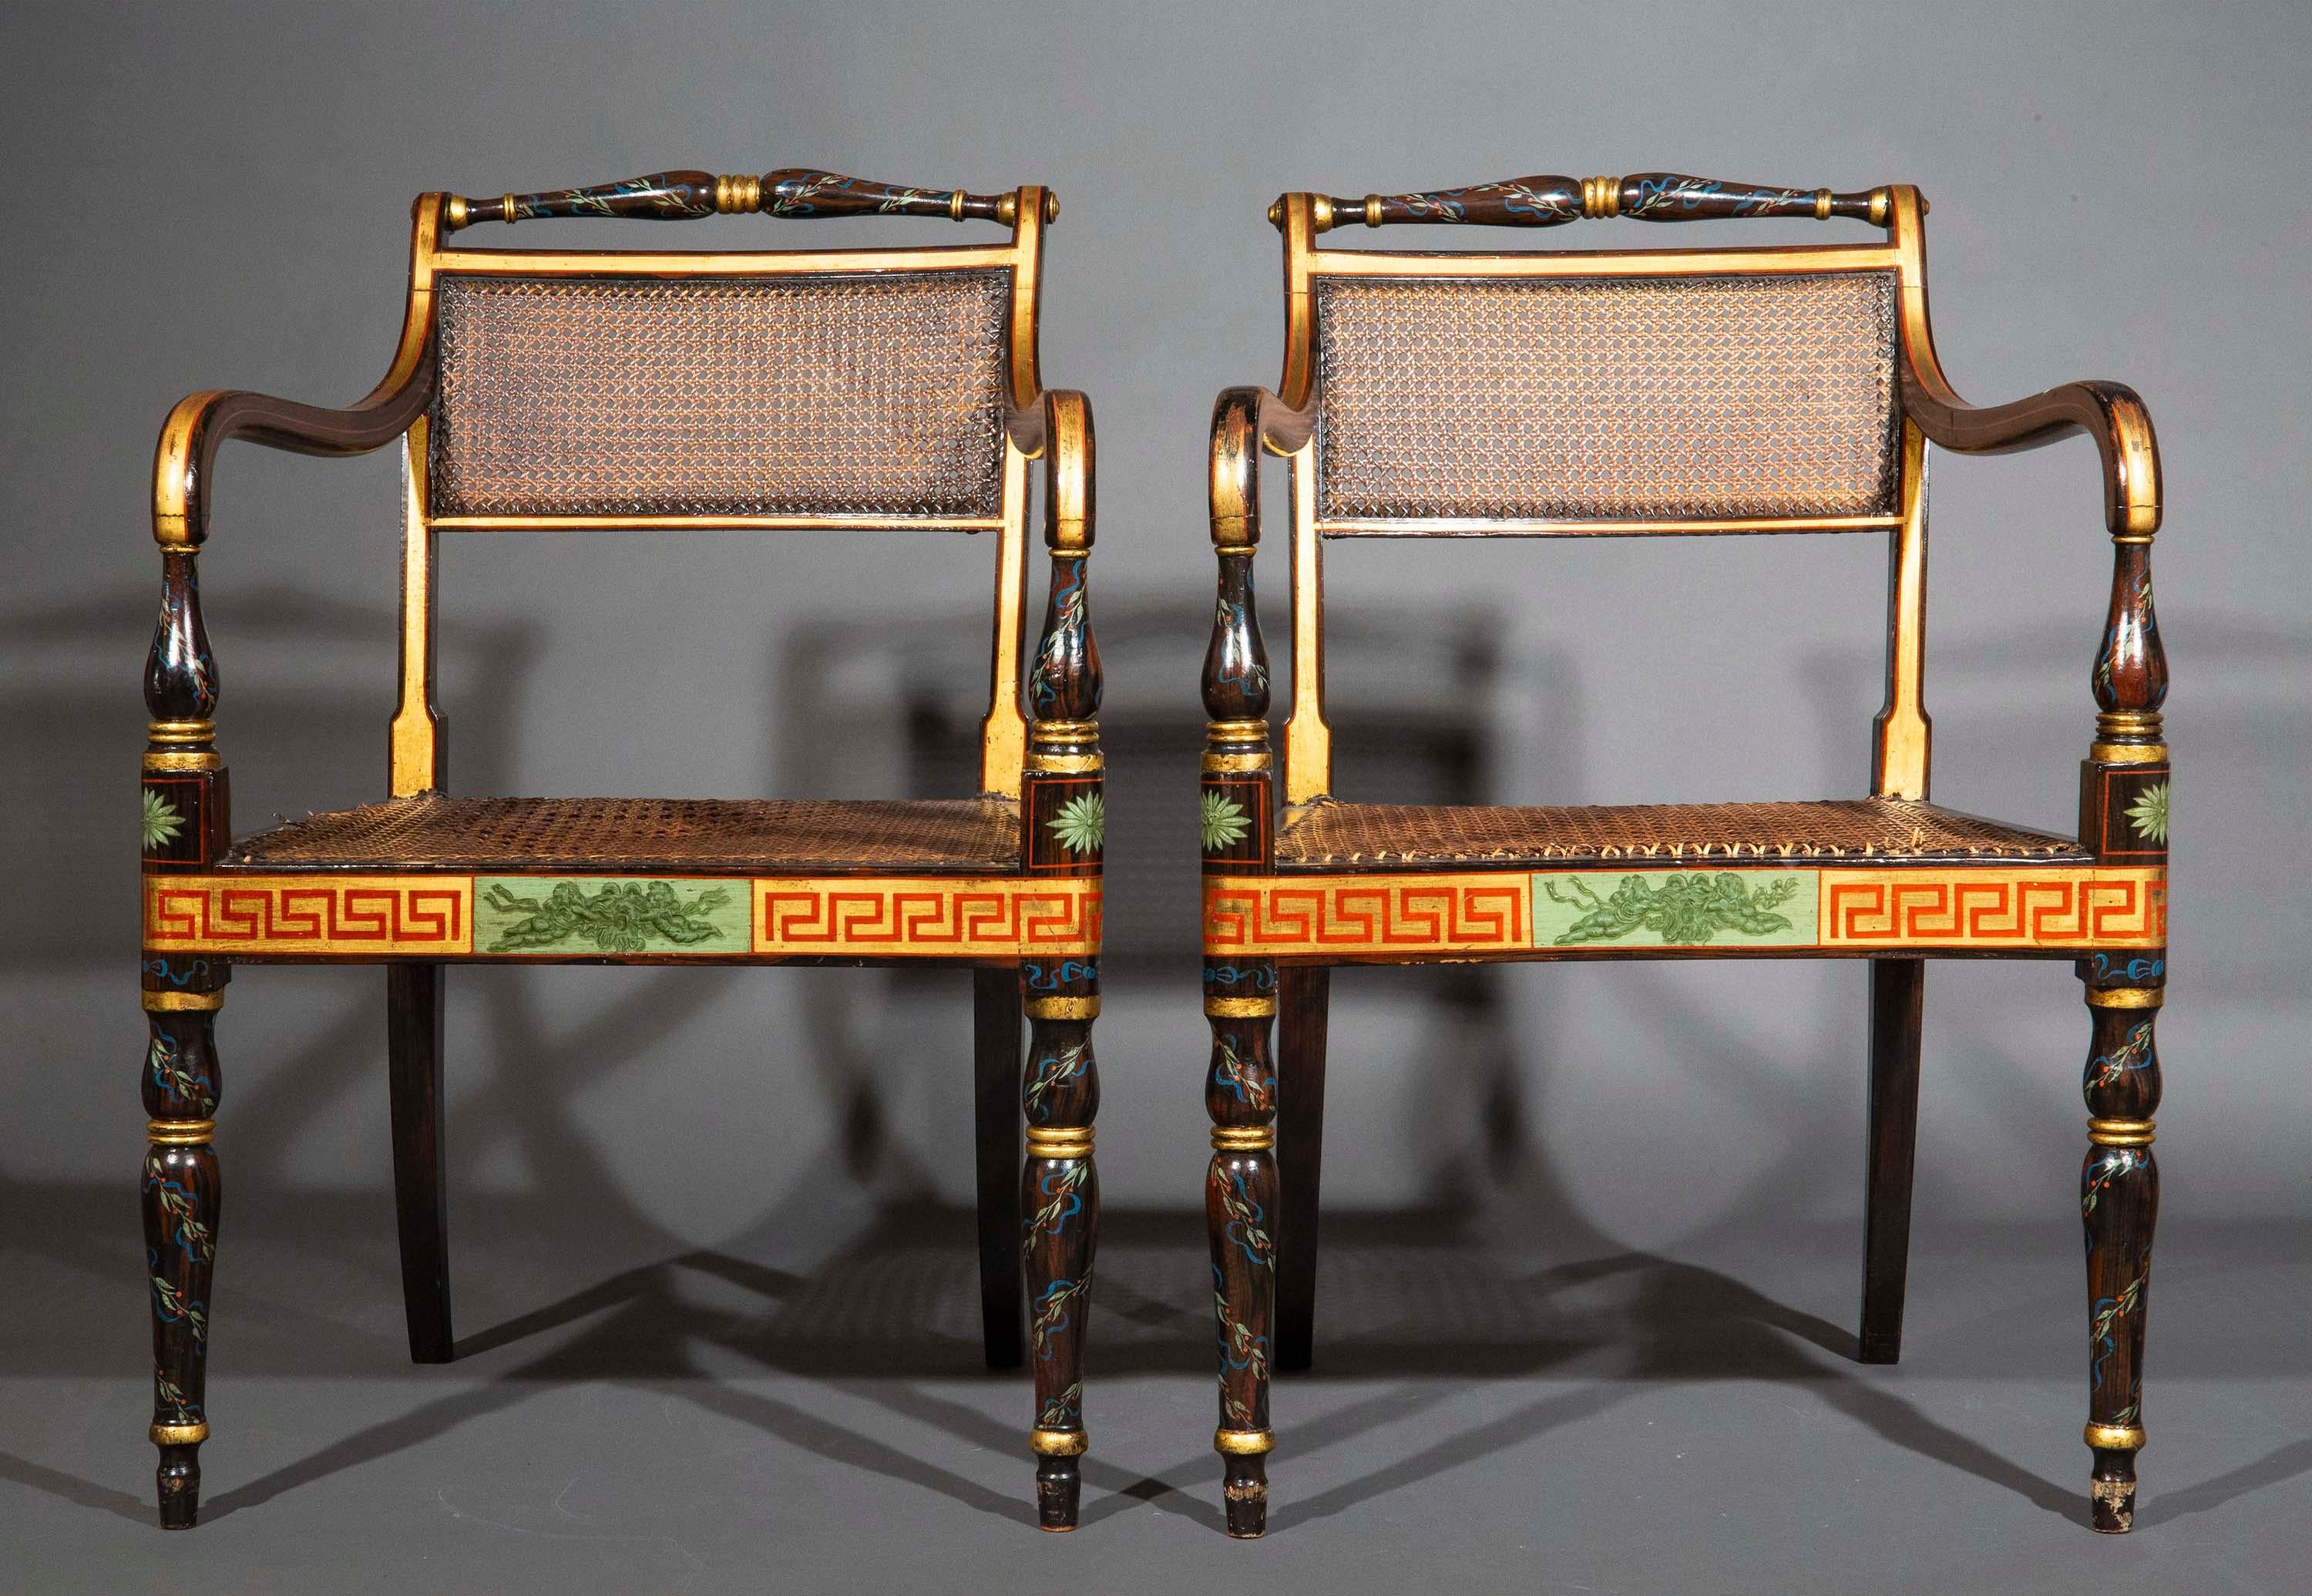 Charmante paire de fauteuils ouverts peints datant de l'époque Regency anglaise, délicatement peints à la main pour simuler le bois exotique et ornés de rubans et de guirlandes de fête néoclassiques, avec une bordure en forme de clé grecque